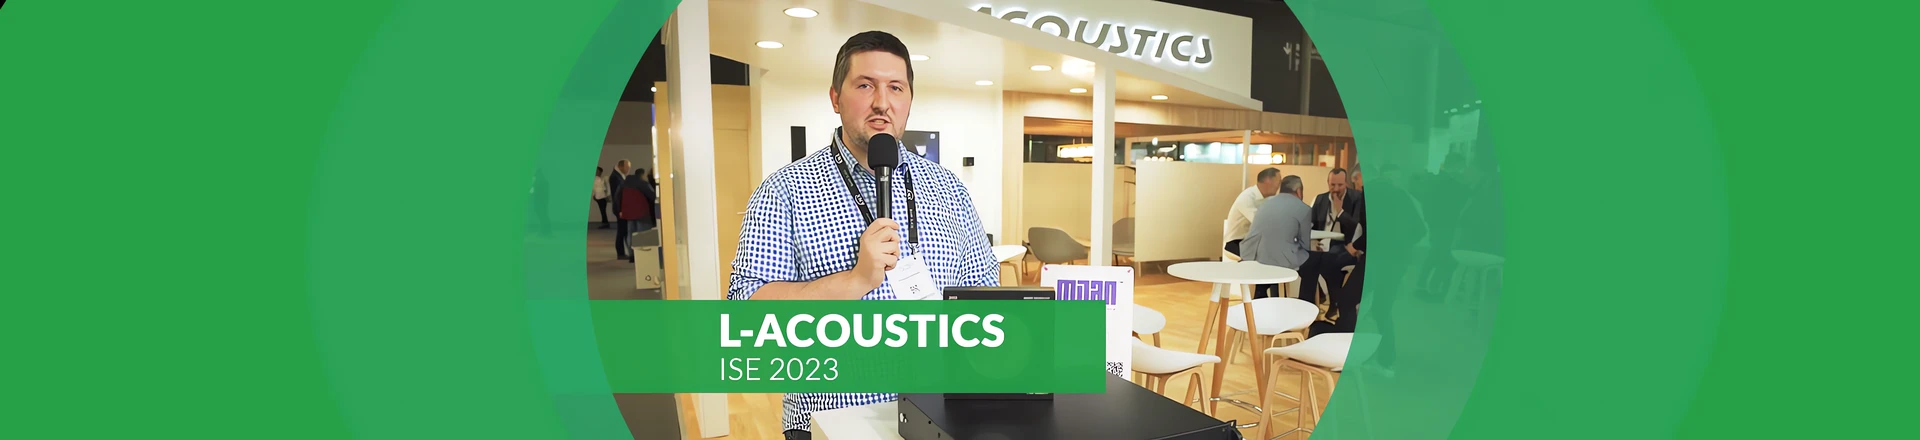 ISE: L-Acoustics z nowościami i nagrodą, Audio Plus z prestiżową nominacją